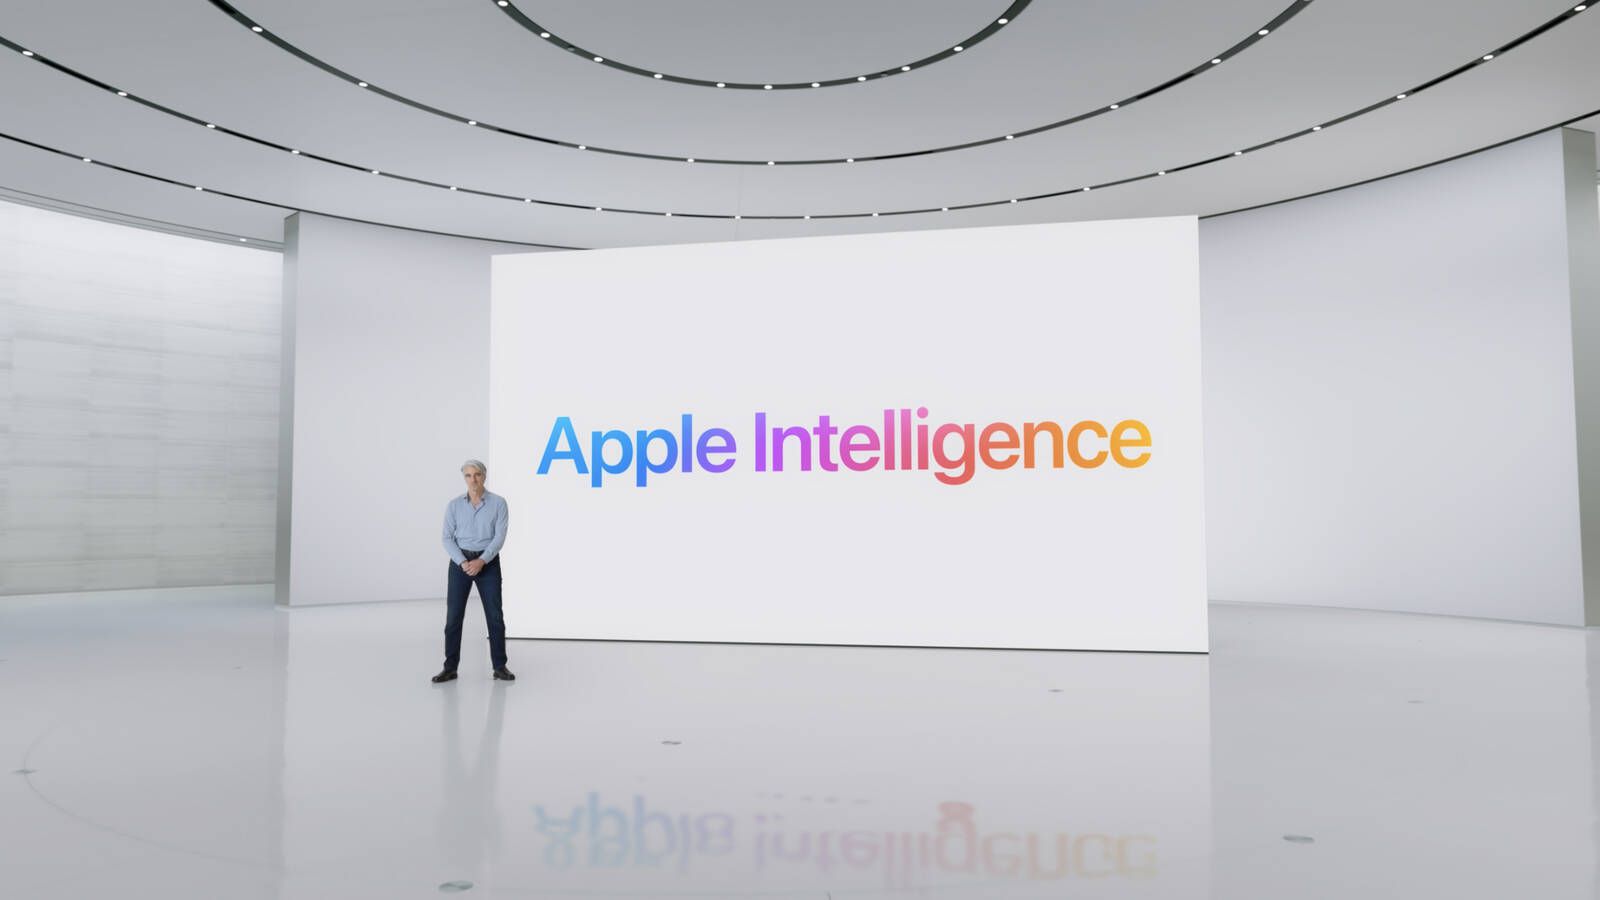 Apple busca socio de inteligencia artificial para Apple Intelligence en China: ¿Quién será el elegido?